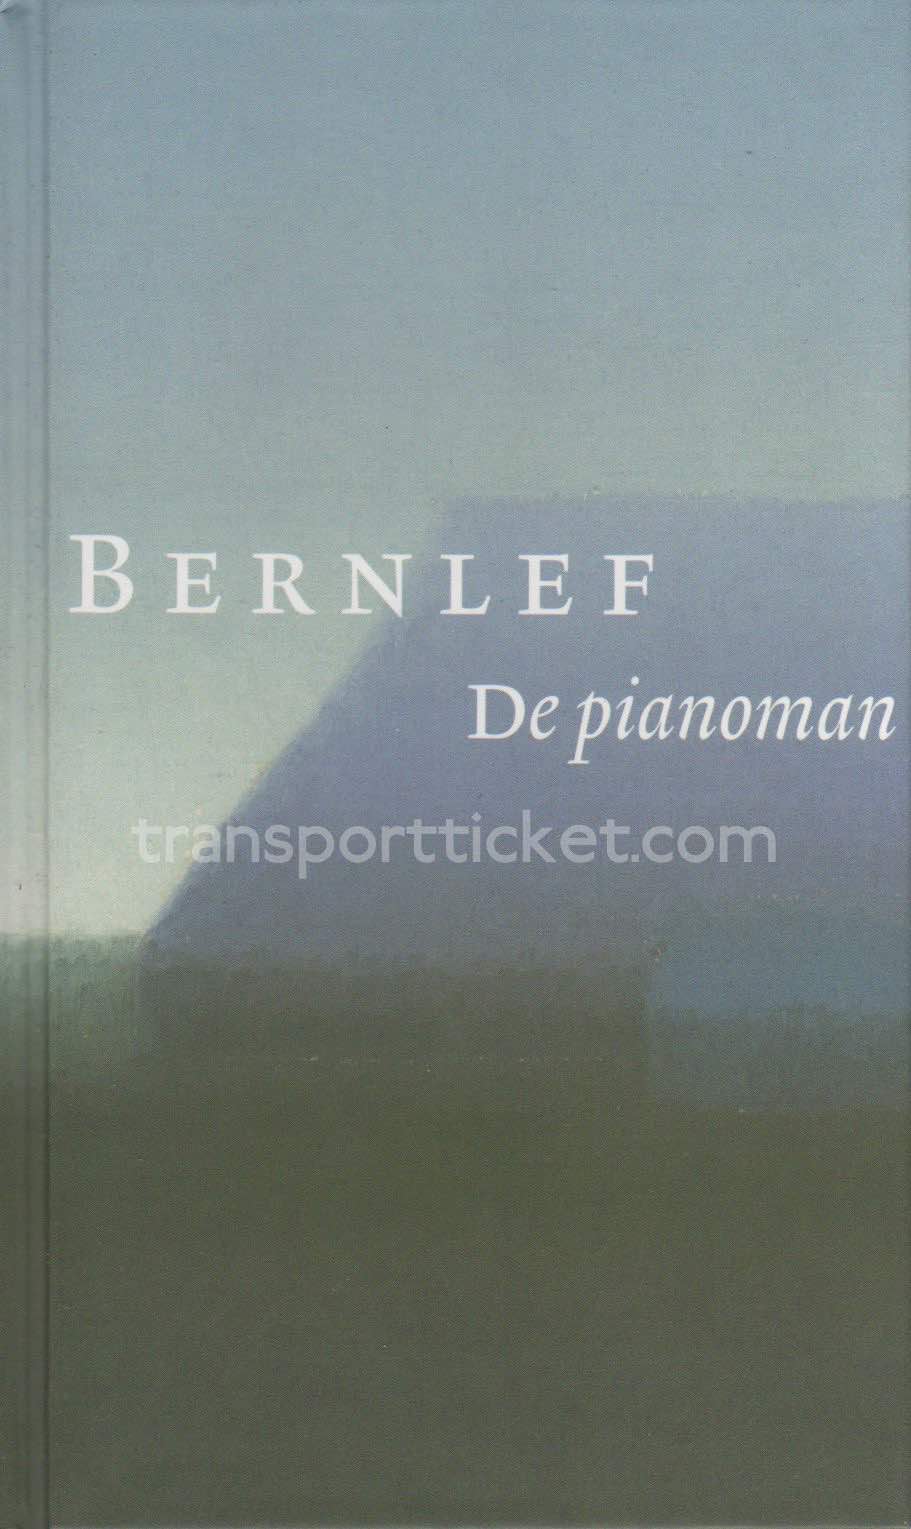 Bernlef - De pianoman (2008)